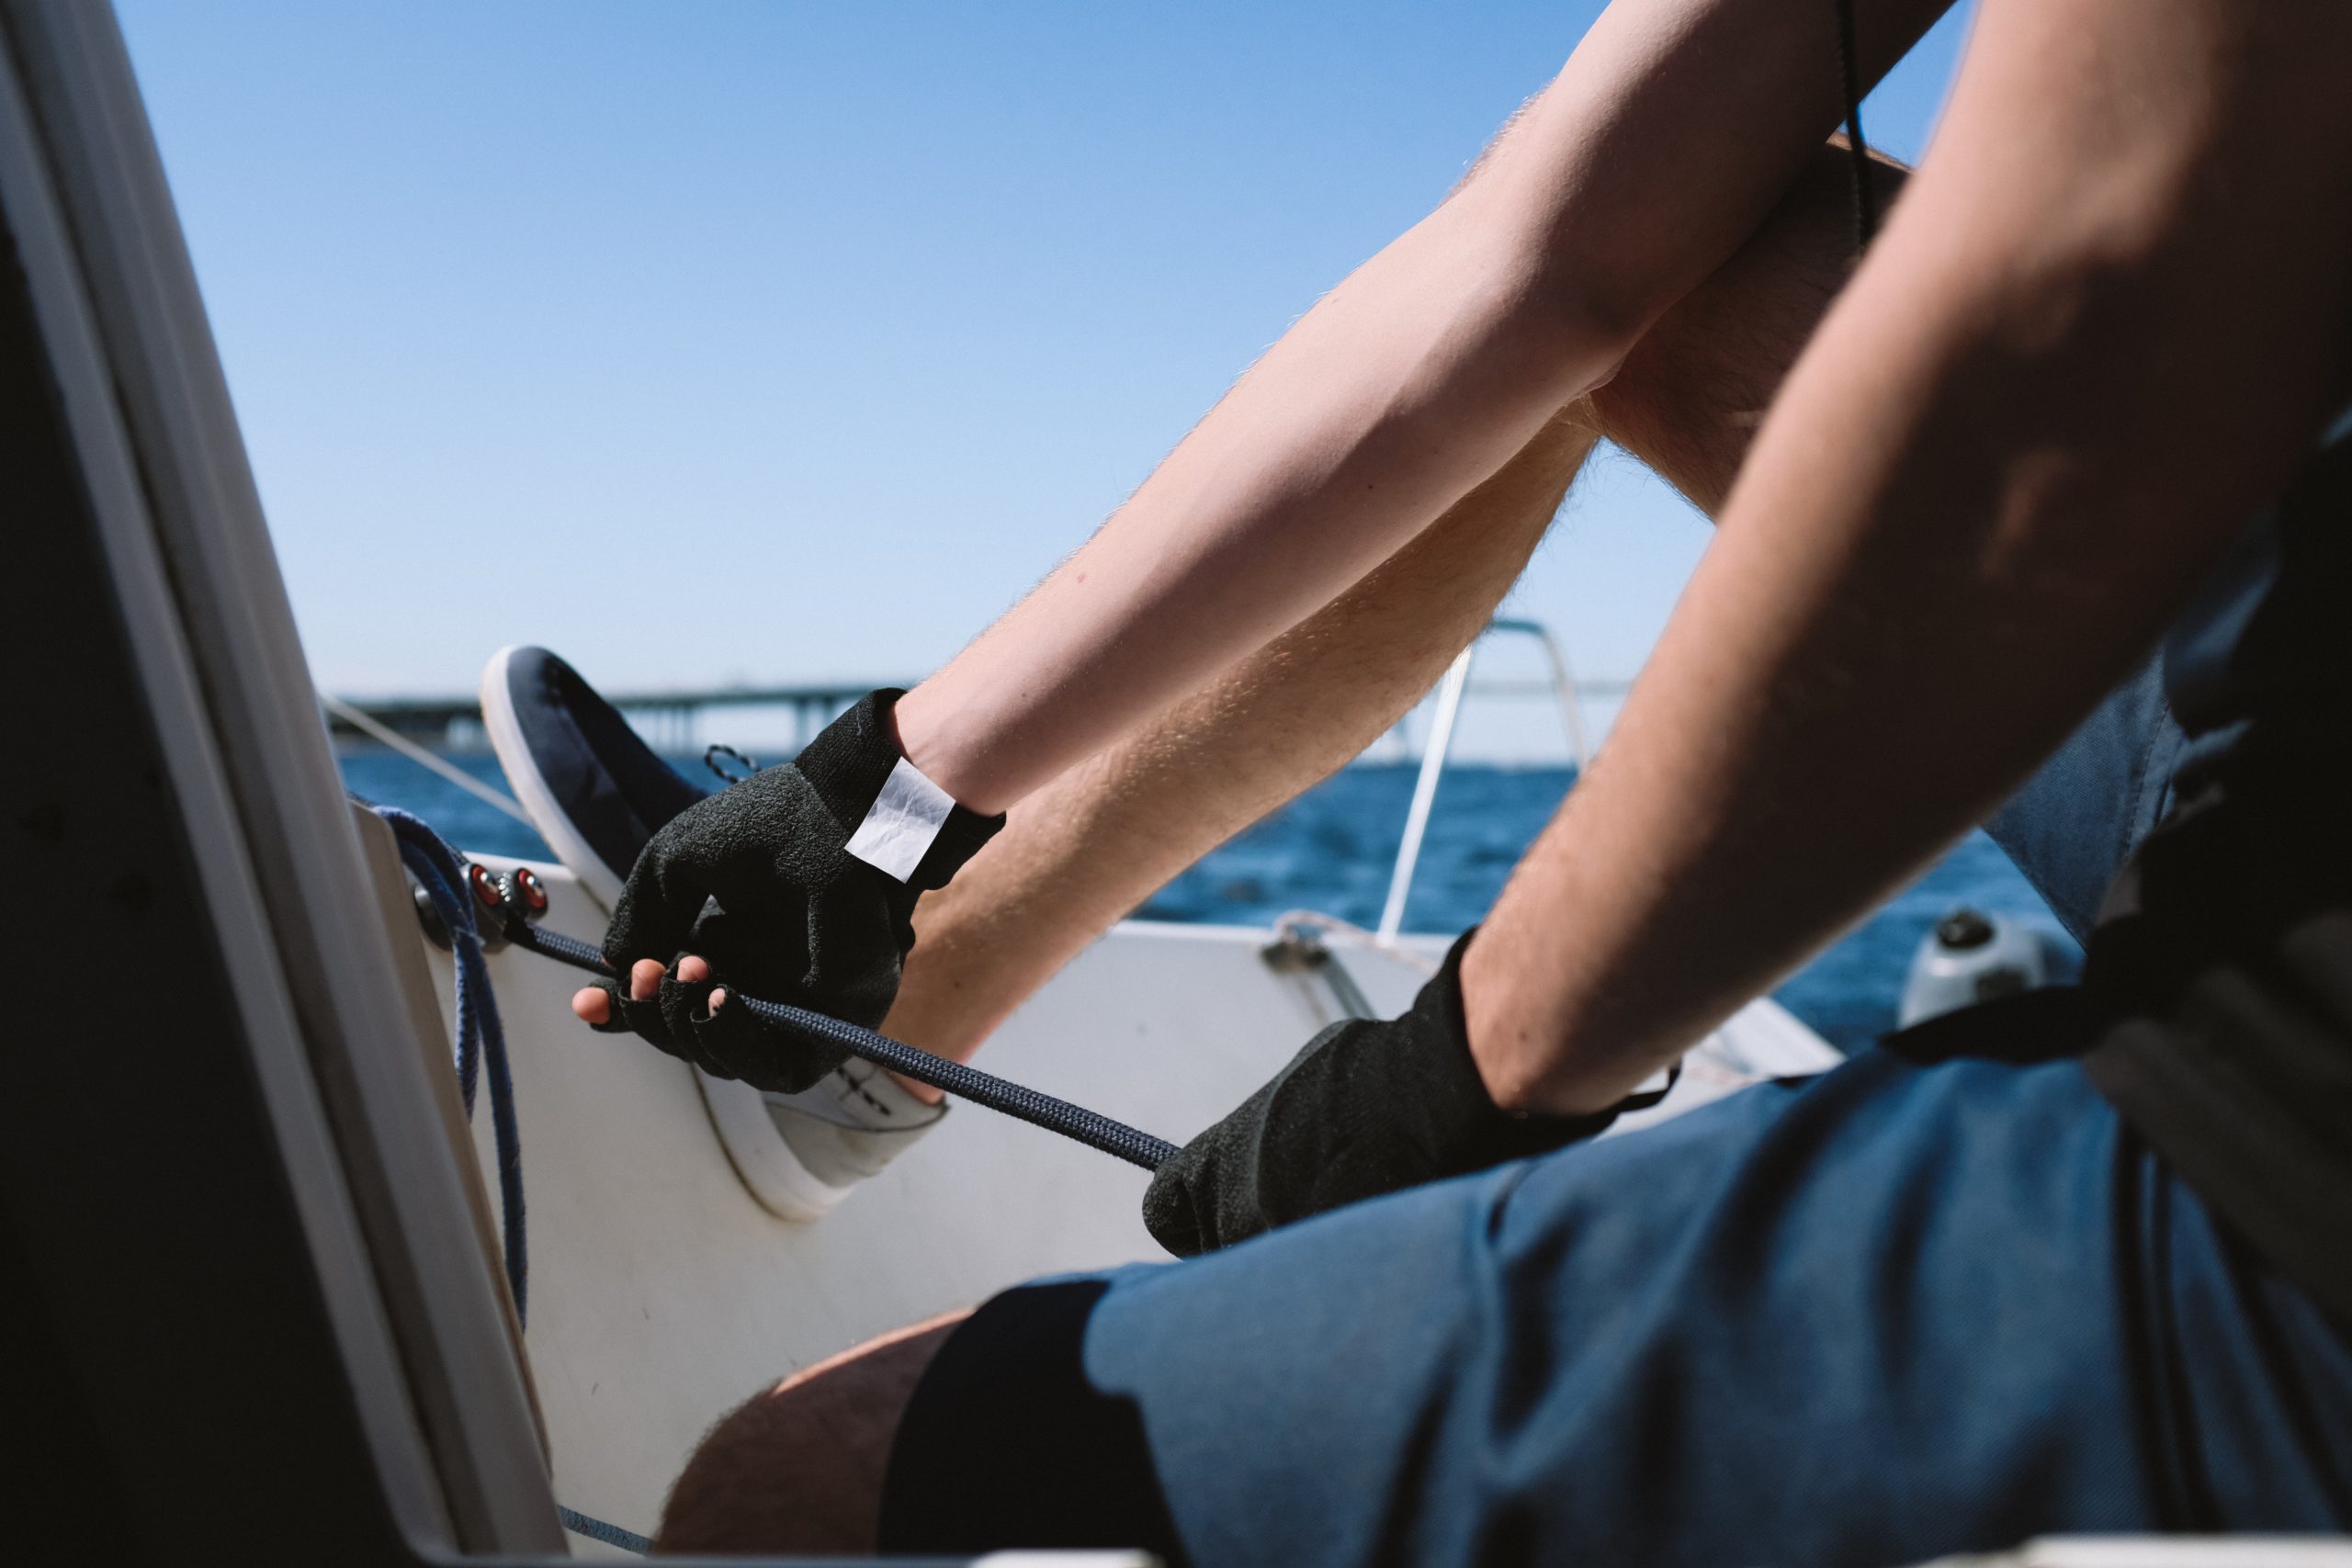 GUIDA: Come riparare una tacchetta a camme su una barca?